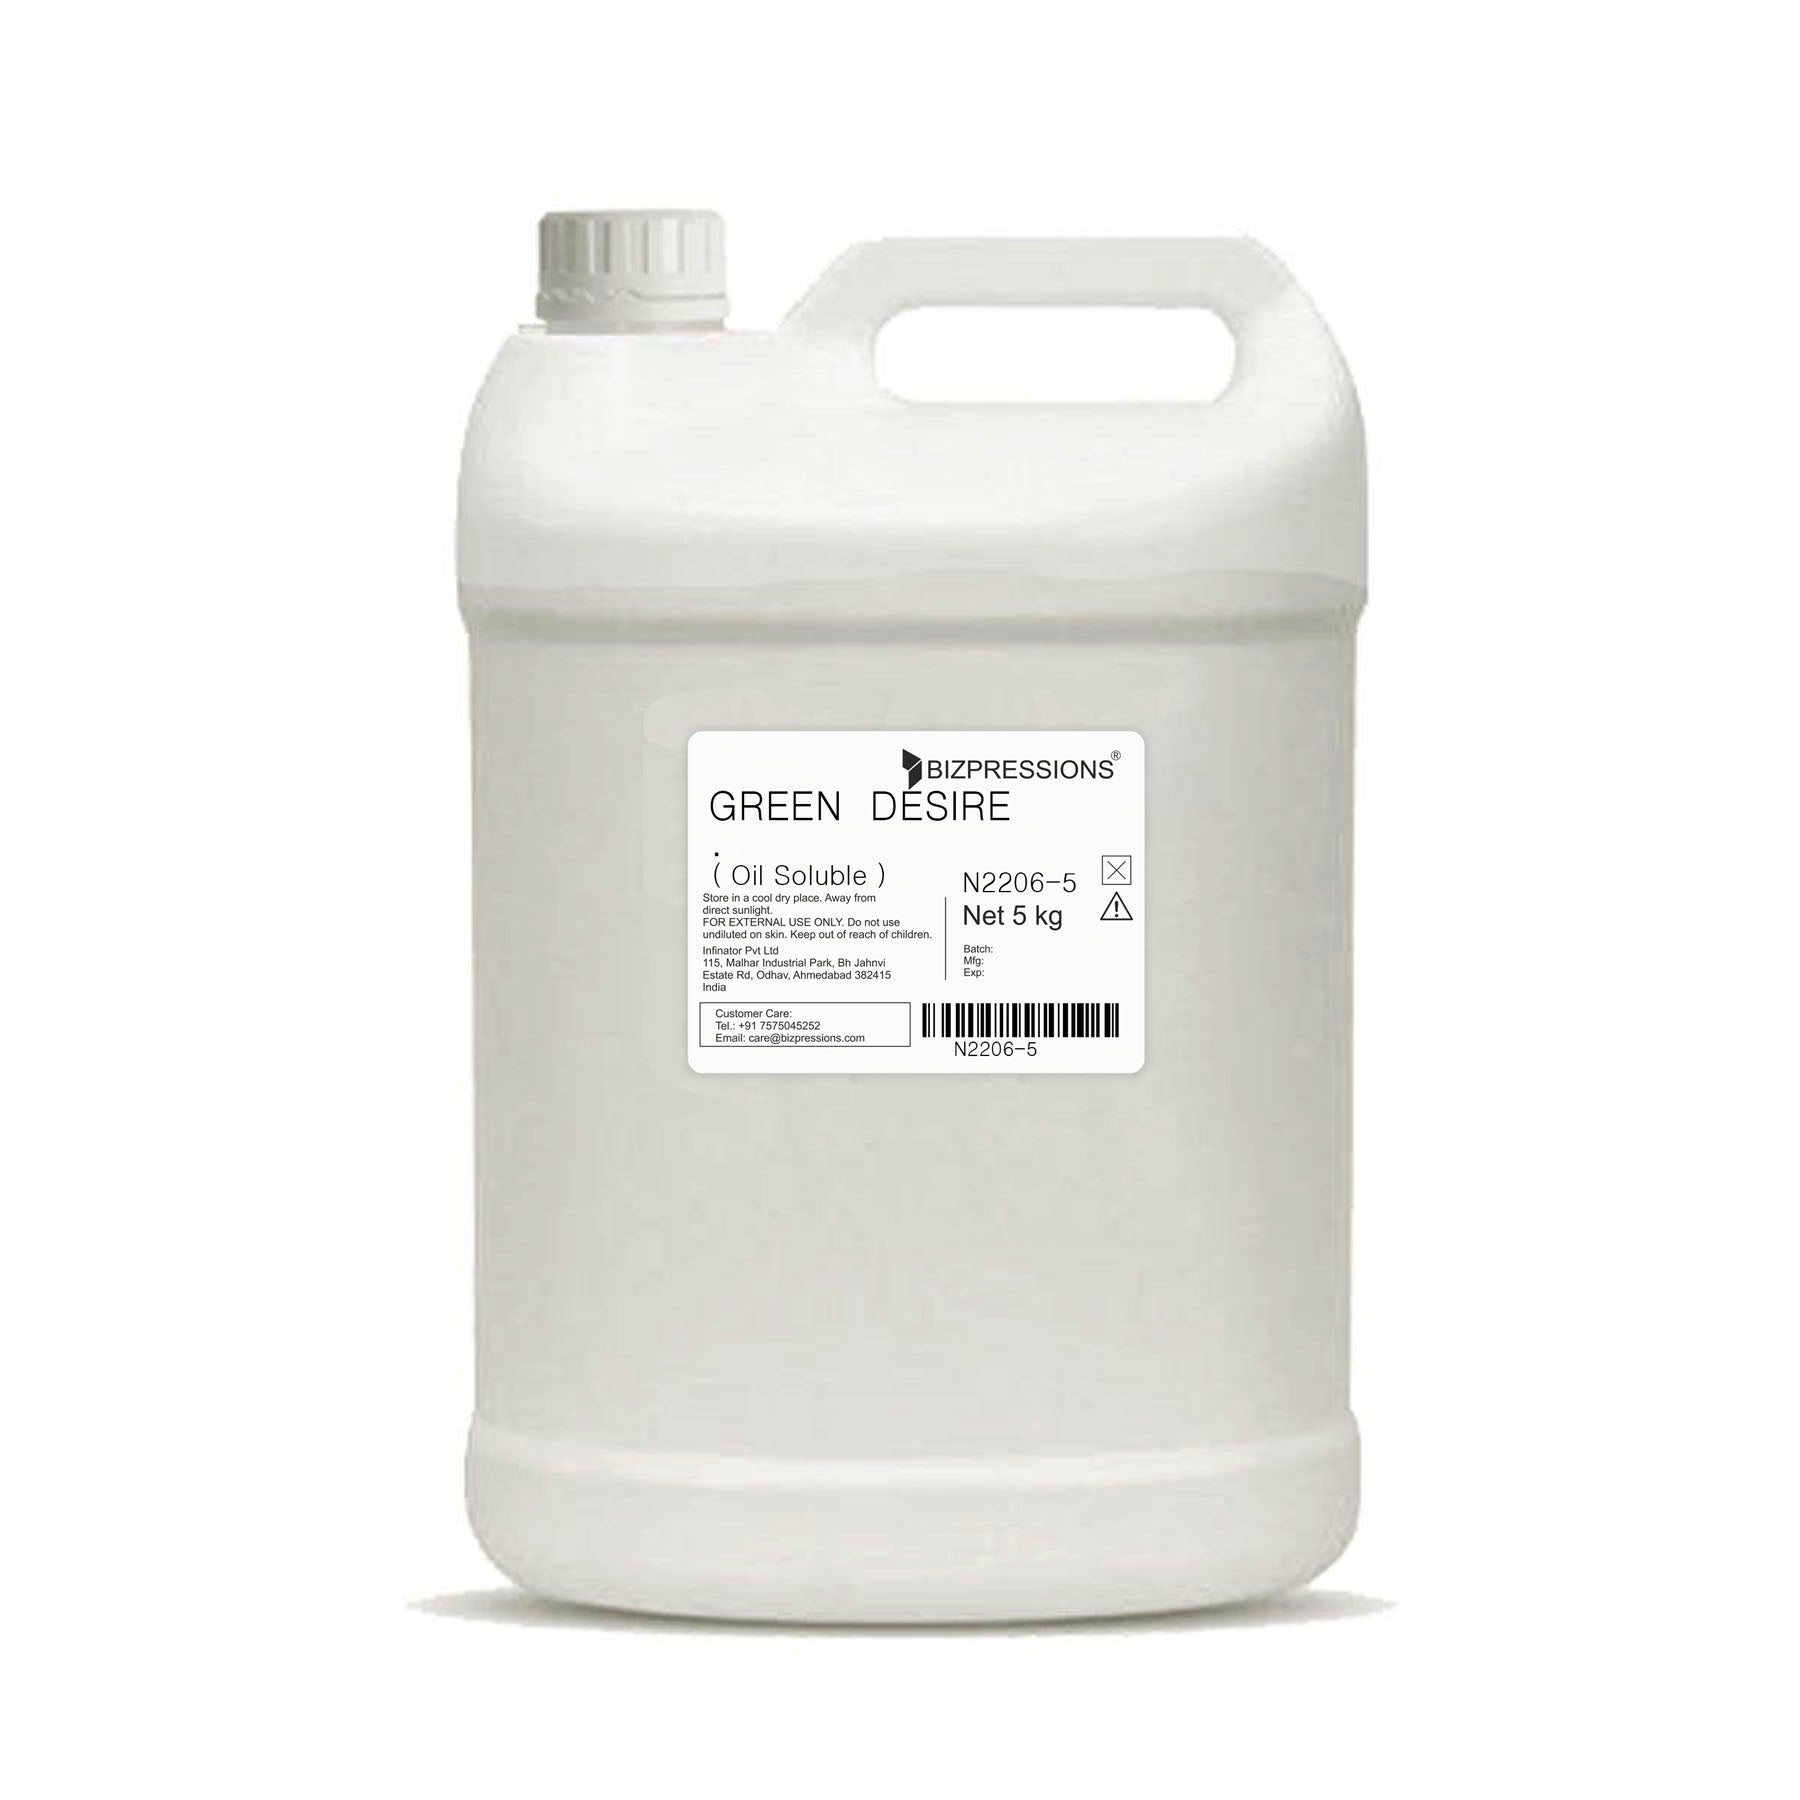 GREEN DESIRE - Fragrance ( Oil Soluble ) - 5 kg